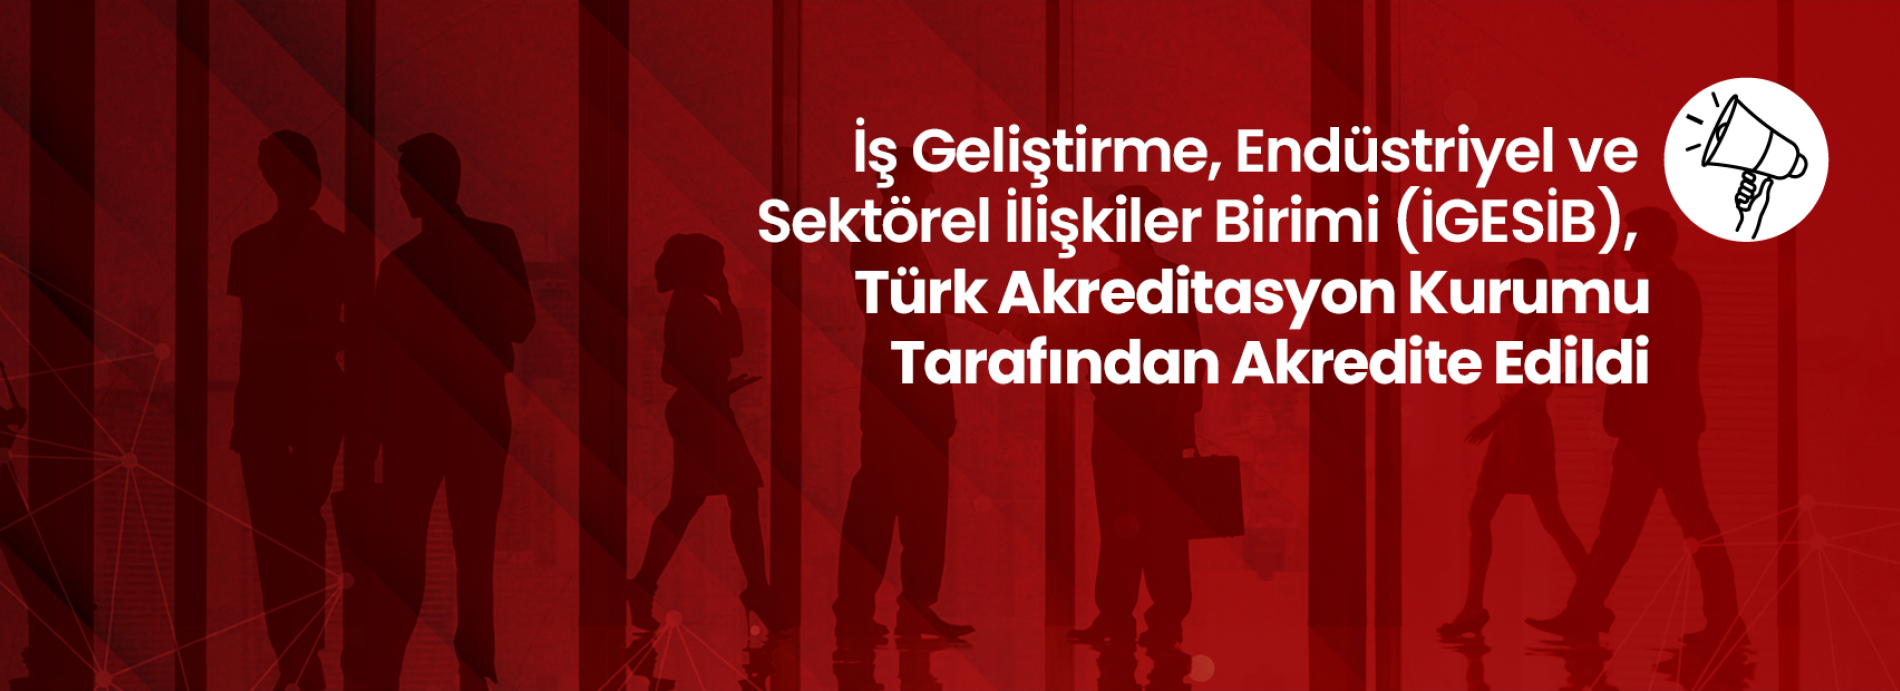 İGESİB, Türk Akreditasyon Kurumu Tarafından Akredite Edildi